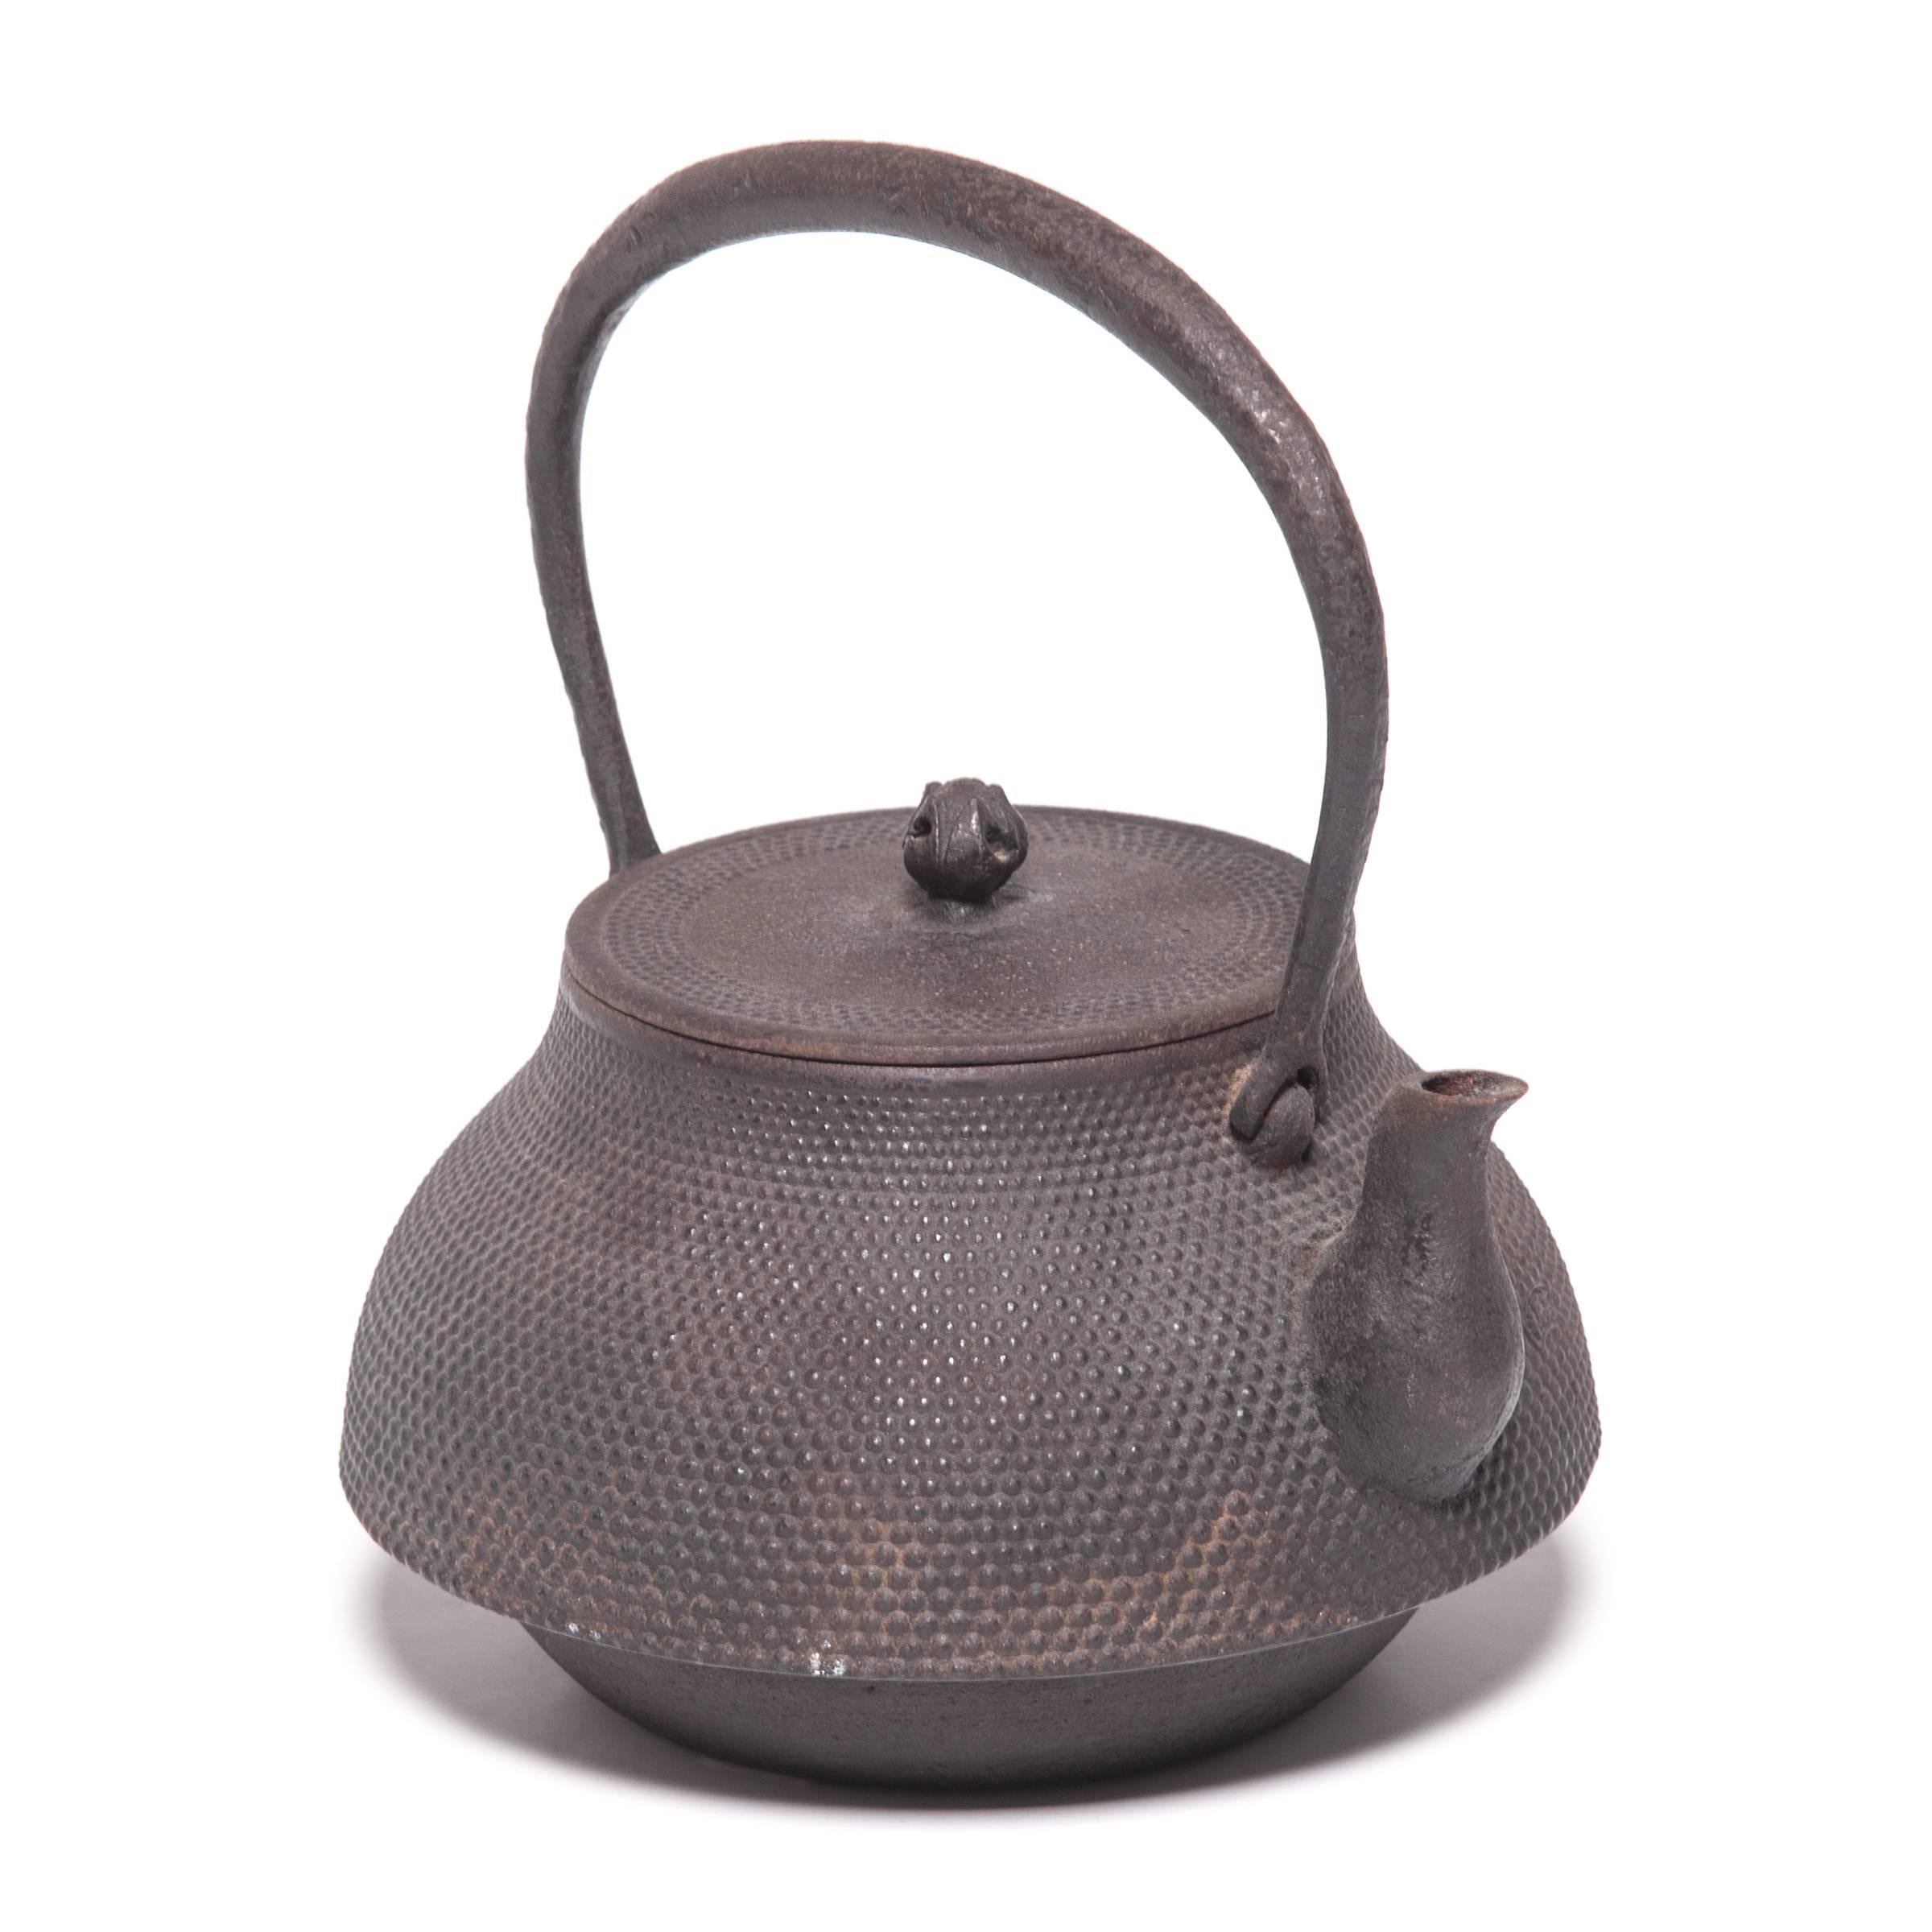 Décorée d'une surface texturée et pointillée et d'une élégante poignée arquée, cette théière japonaise était utilisée pour faire bouillir l'eau lors des cérémonies traditionnelles du thé. Connue sous le nom de tetsubin, la construction en fonte de